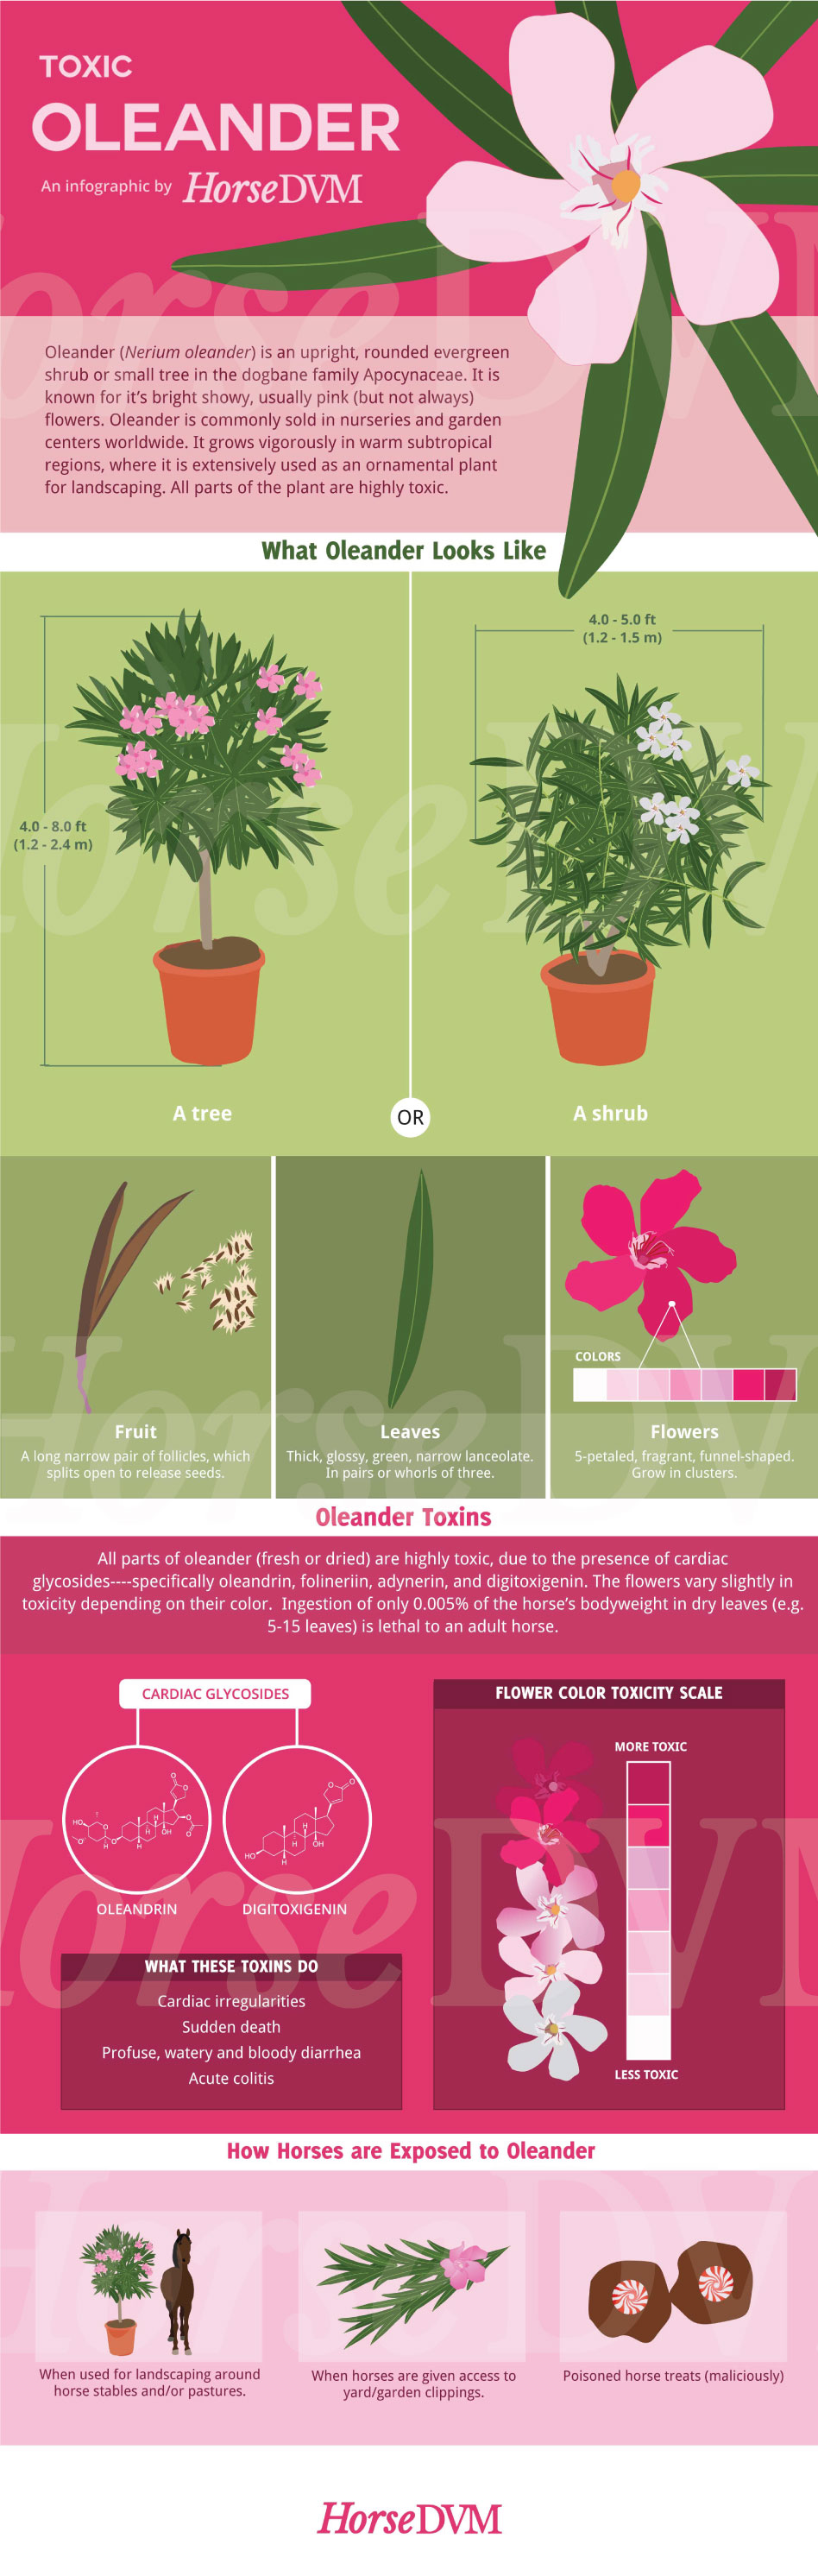 HorseDVM - horsedvm-infographic-oleander-toxic-horses